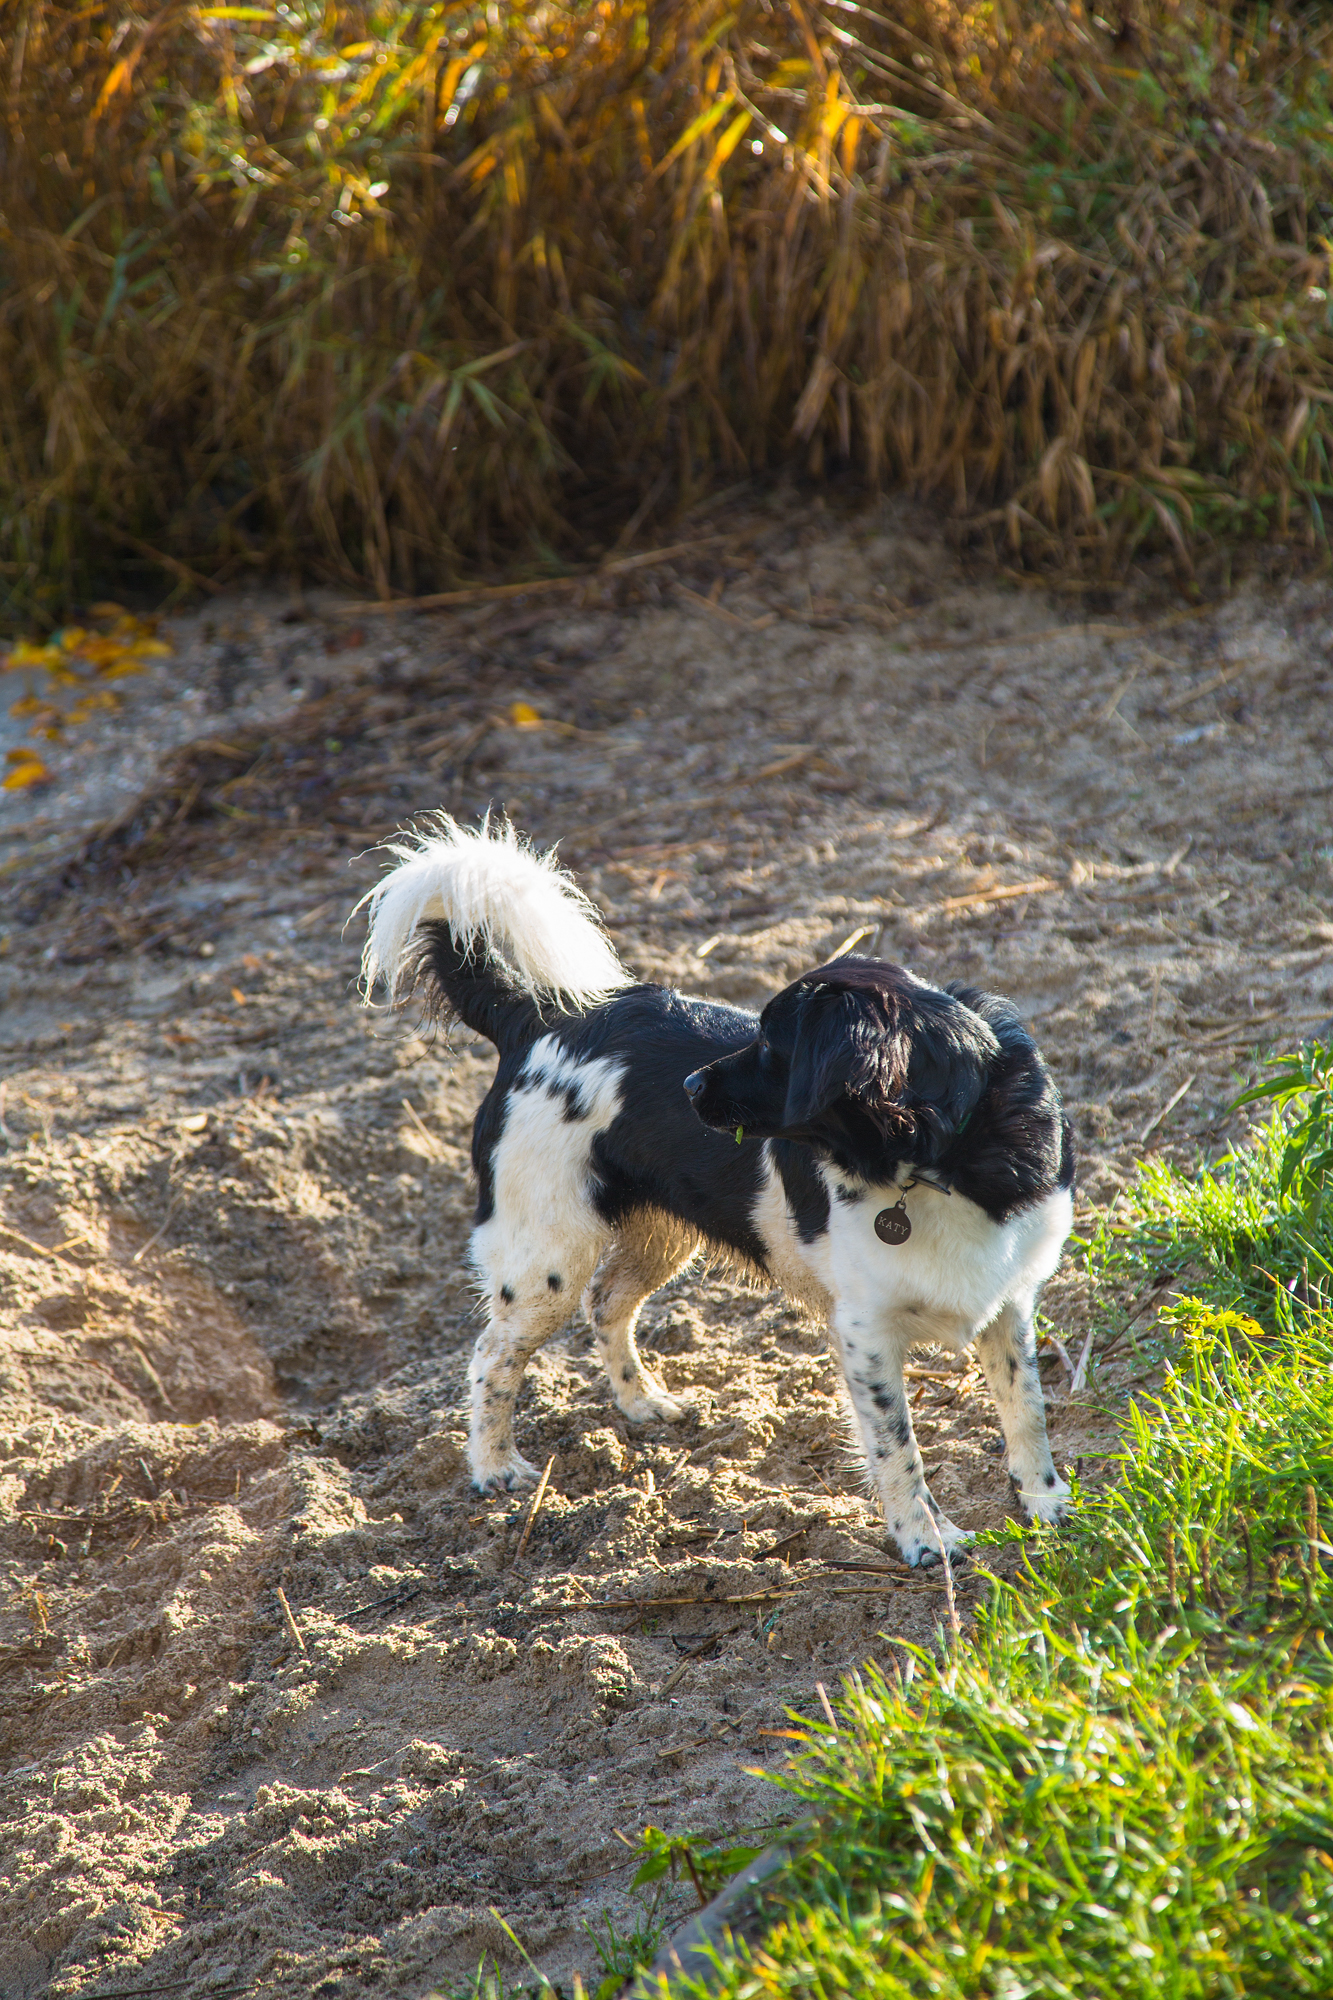 The Dog on the Beach